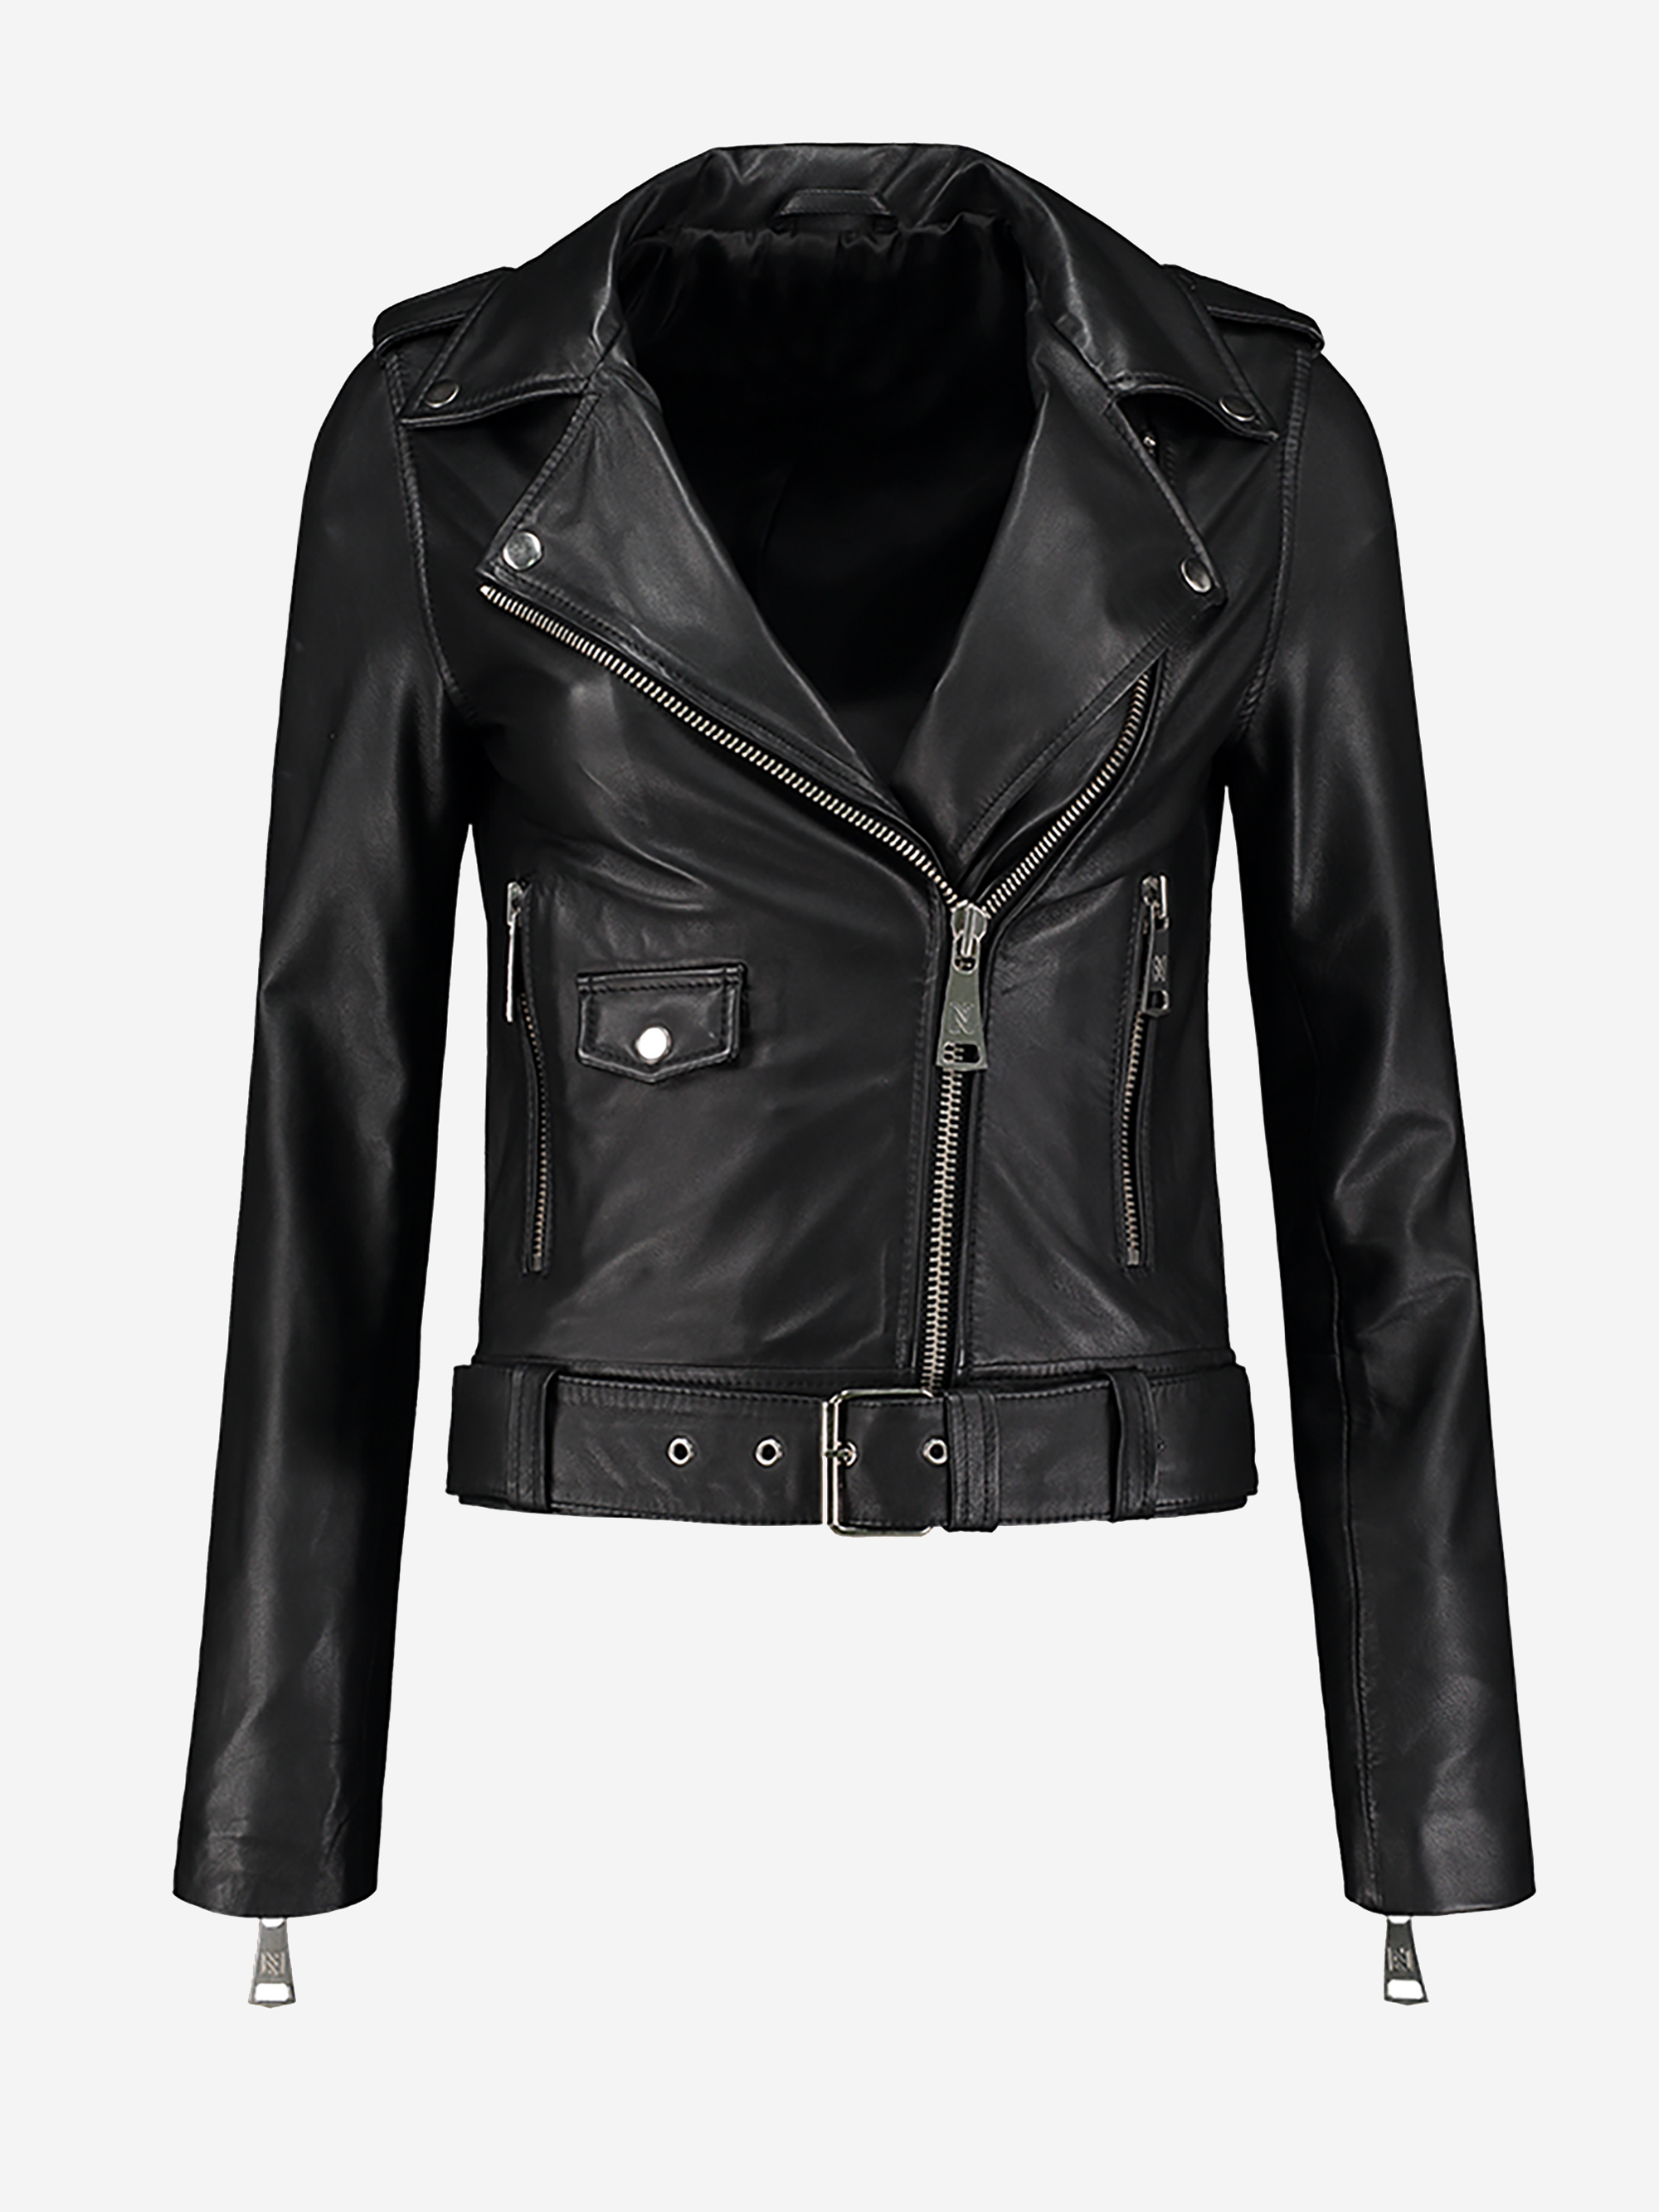 Black biker jacket made of leather